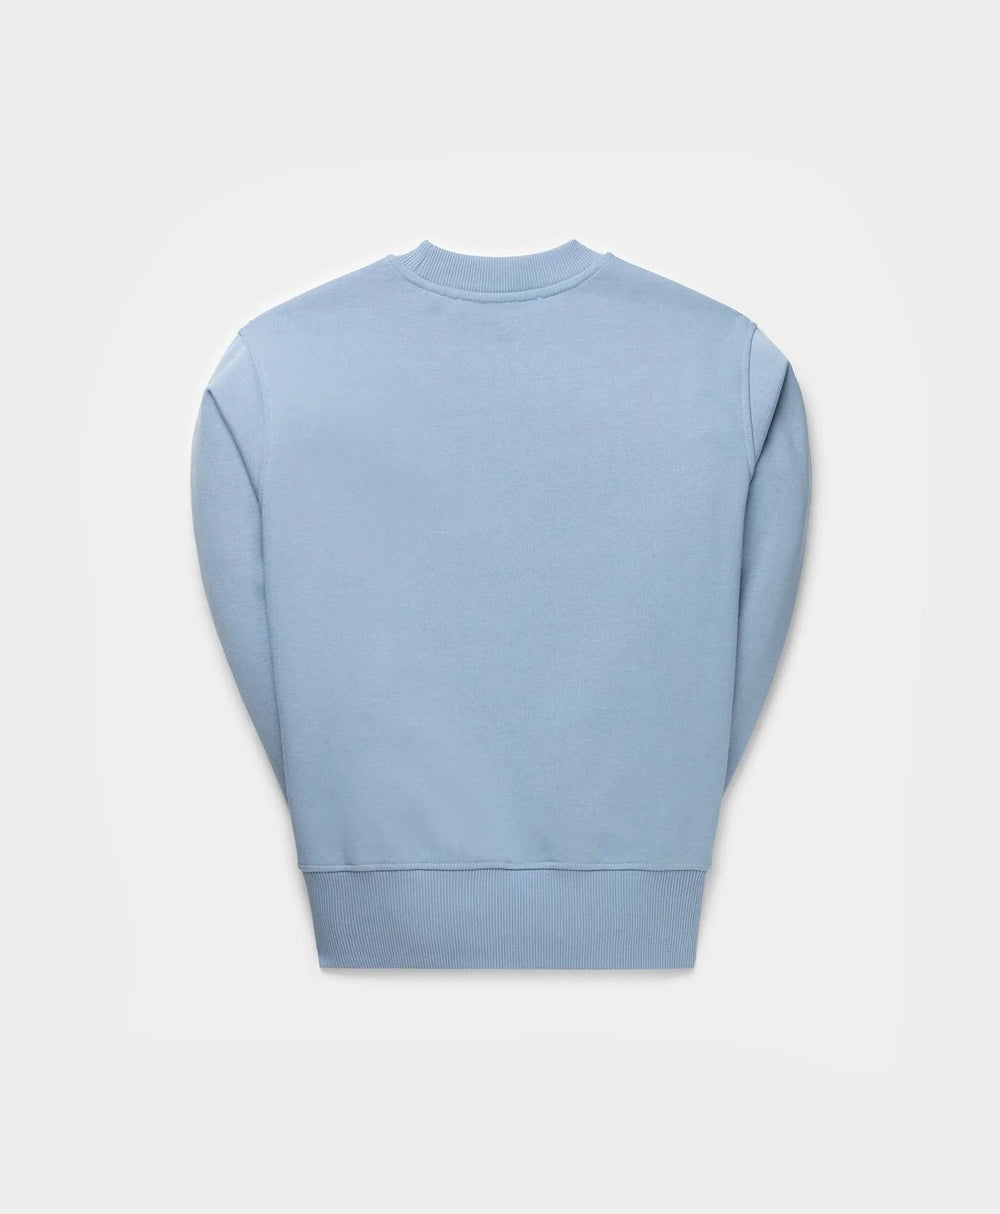 DP - Rainwashed Blue Youth Sweater - Packshot - Rear